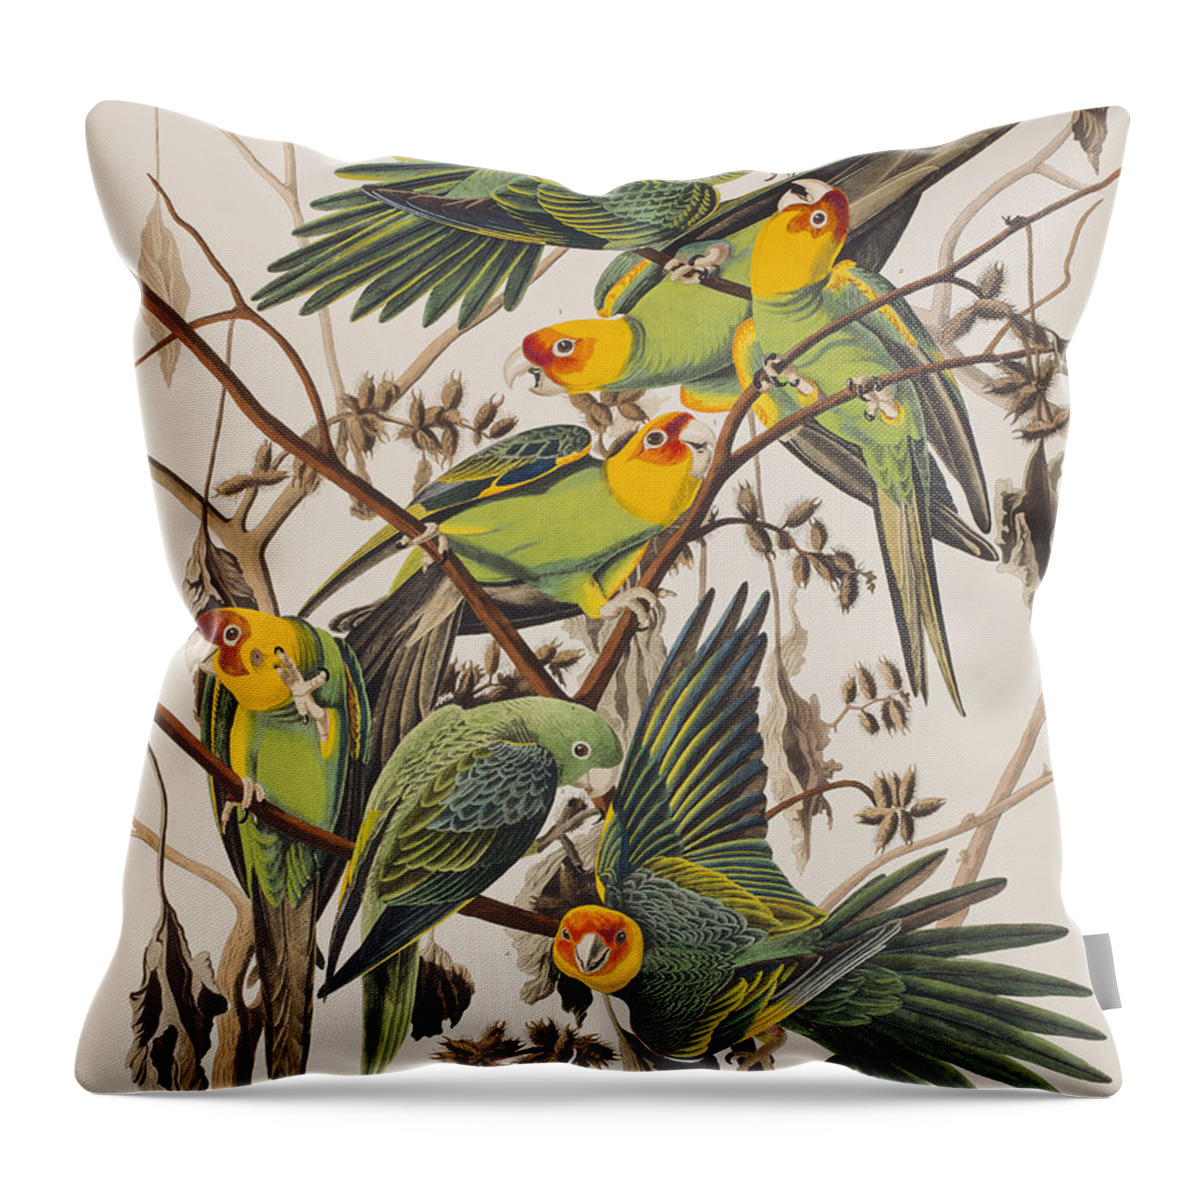 Parakeet Throw Pillow featuring the painting Carolina Parrot by John James Audubon